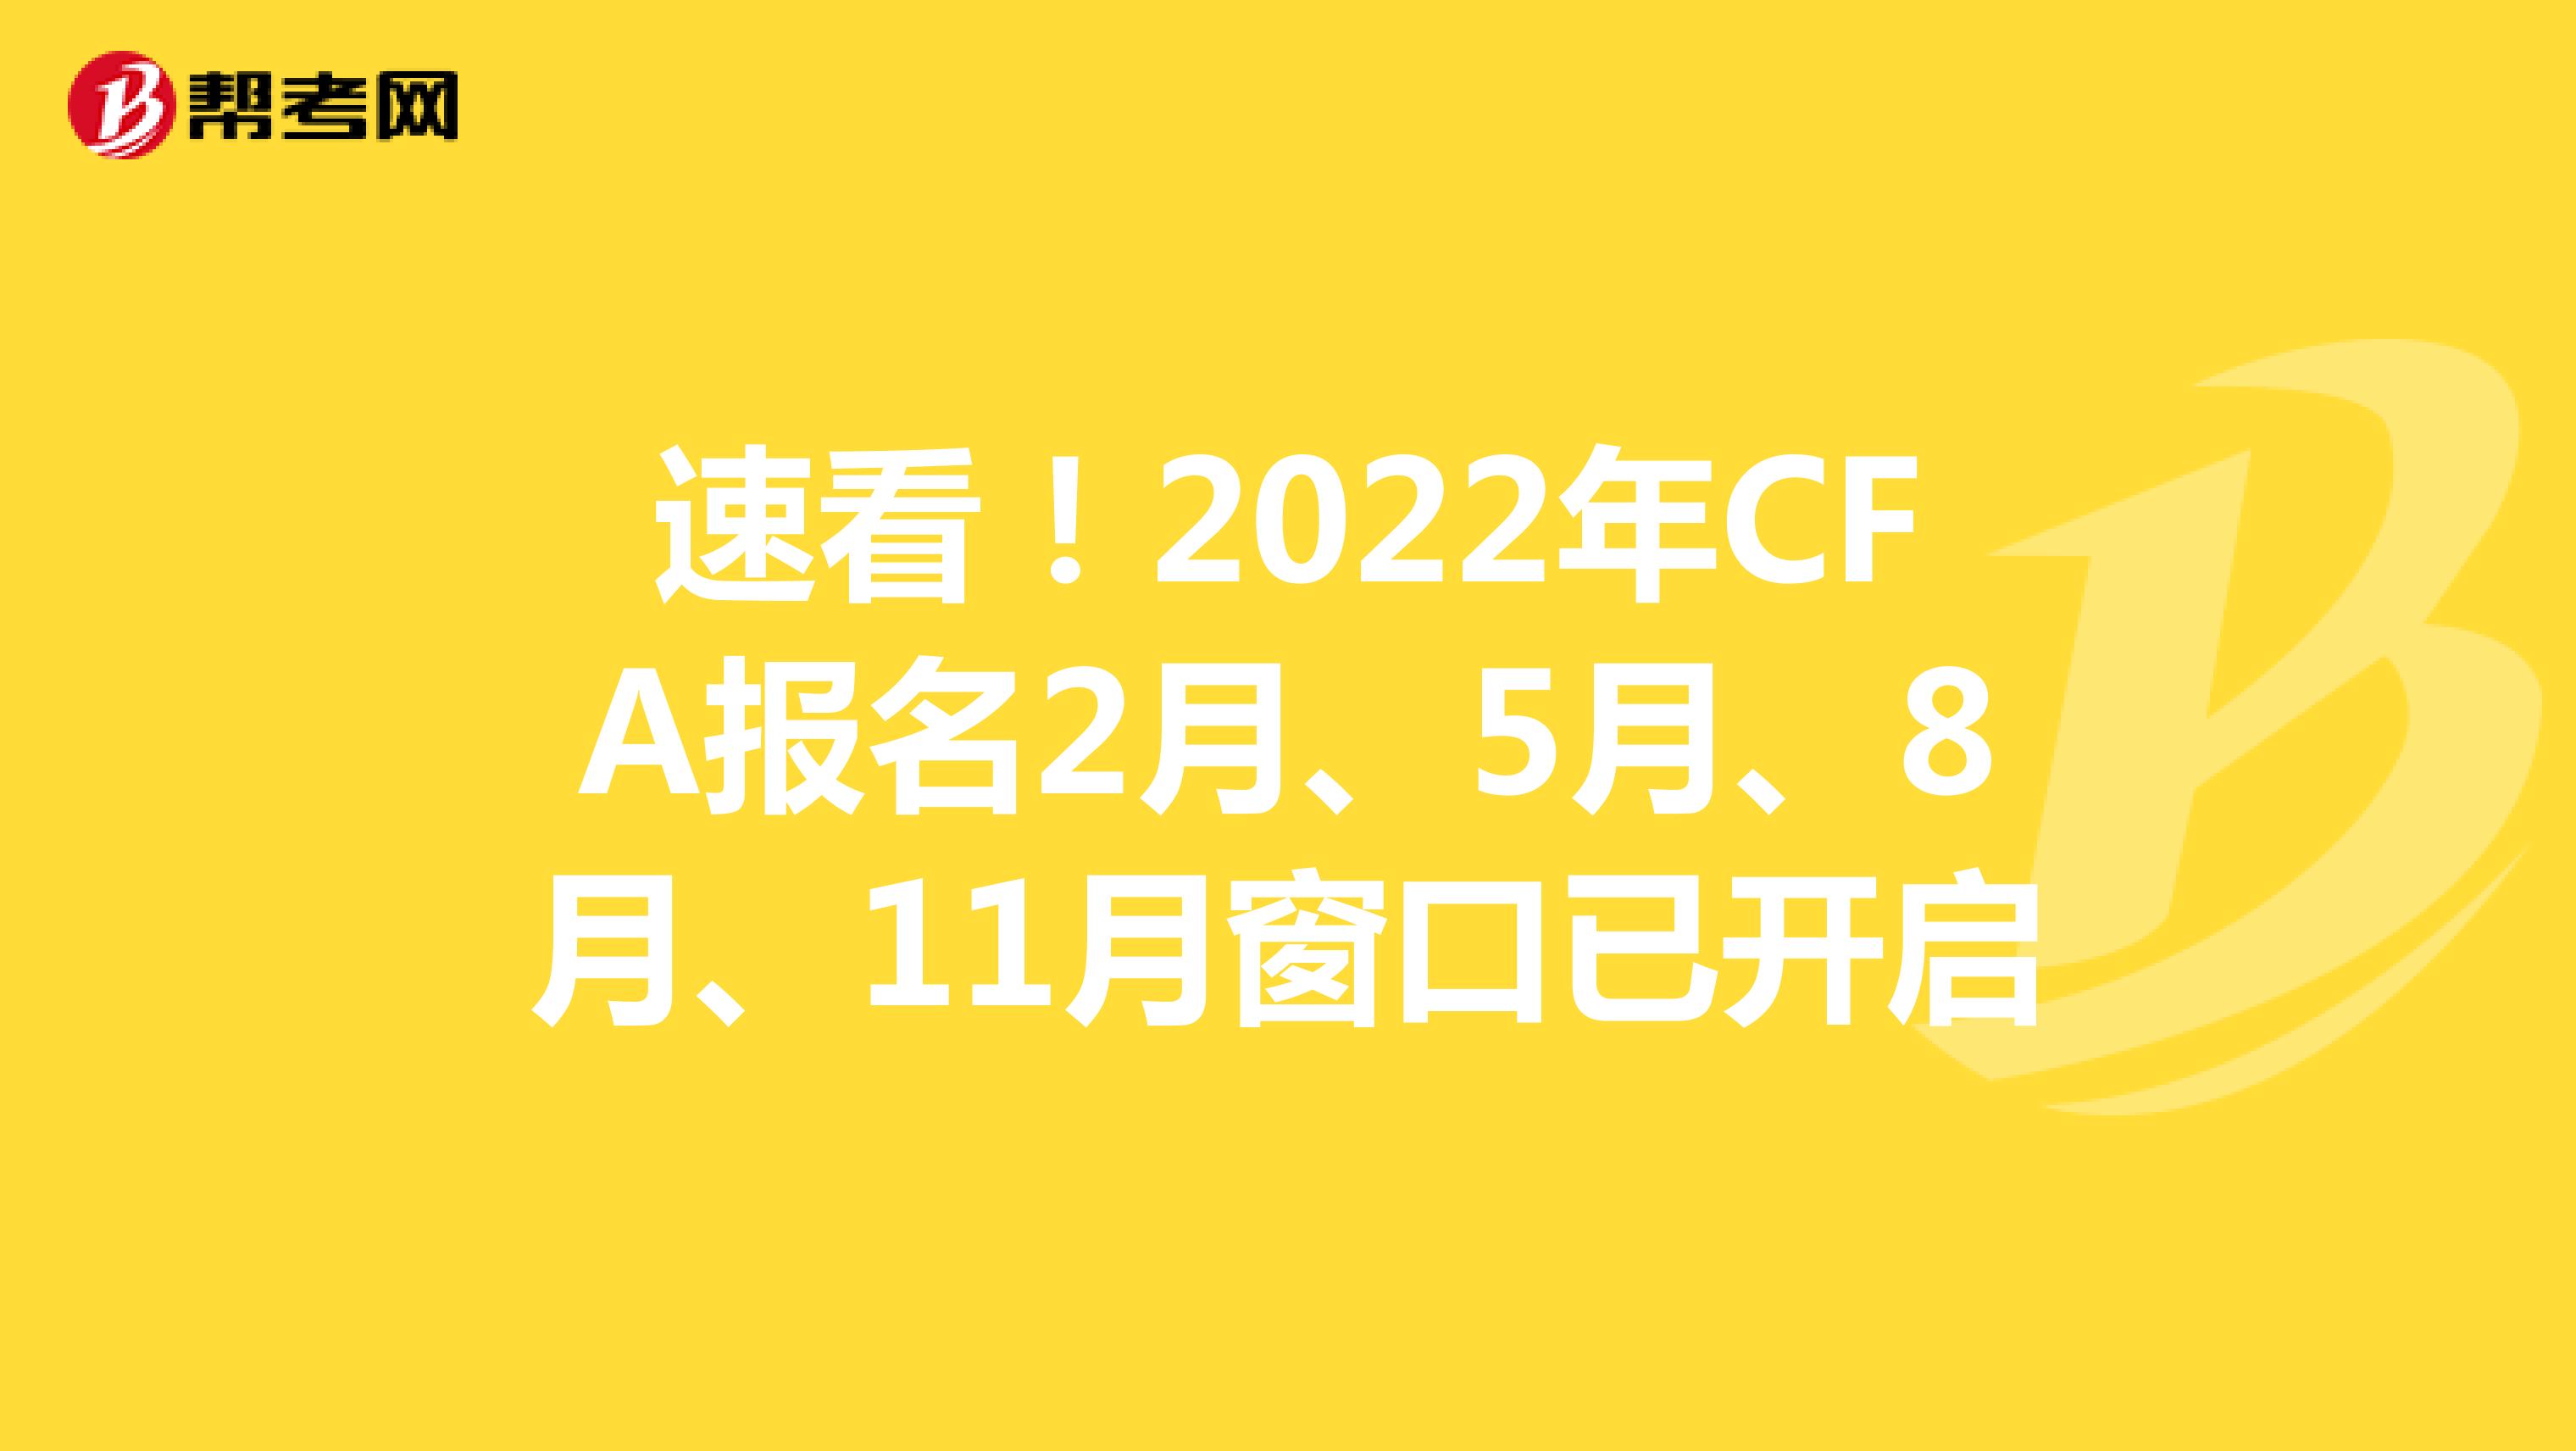 速看！2022年CFA报名2月、5月、8月、11月窗口已开启